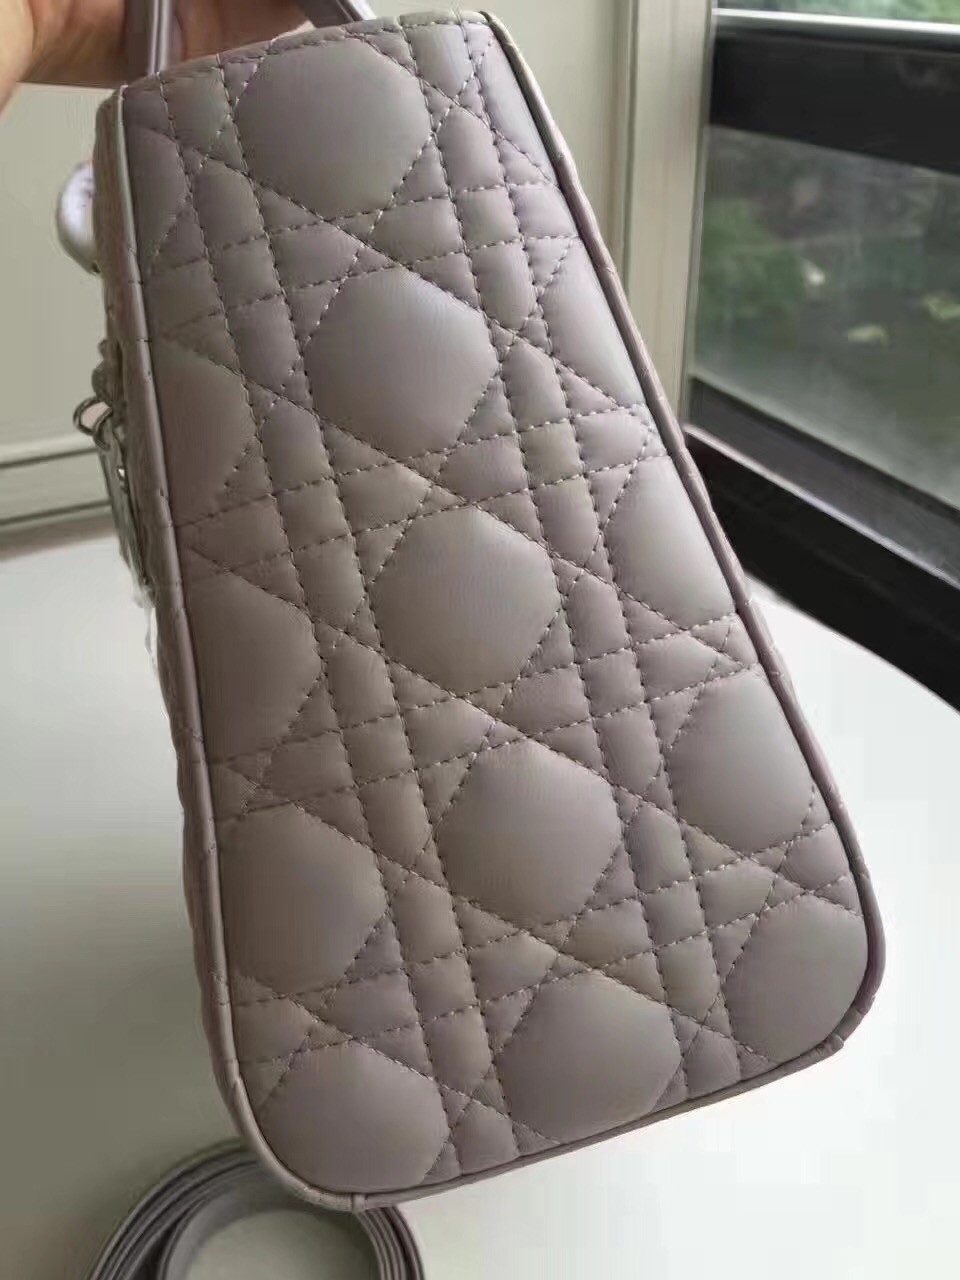 Dior Medium Lady Dior Bag In Grey Lambskin 795